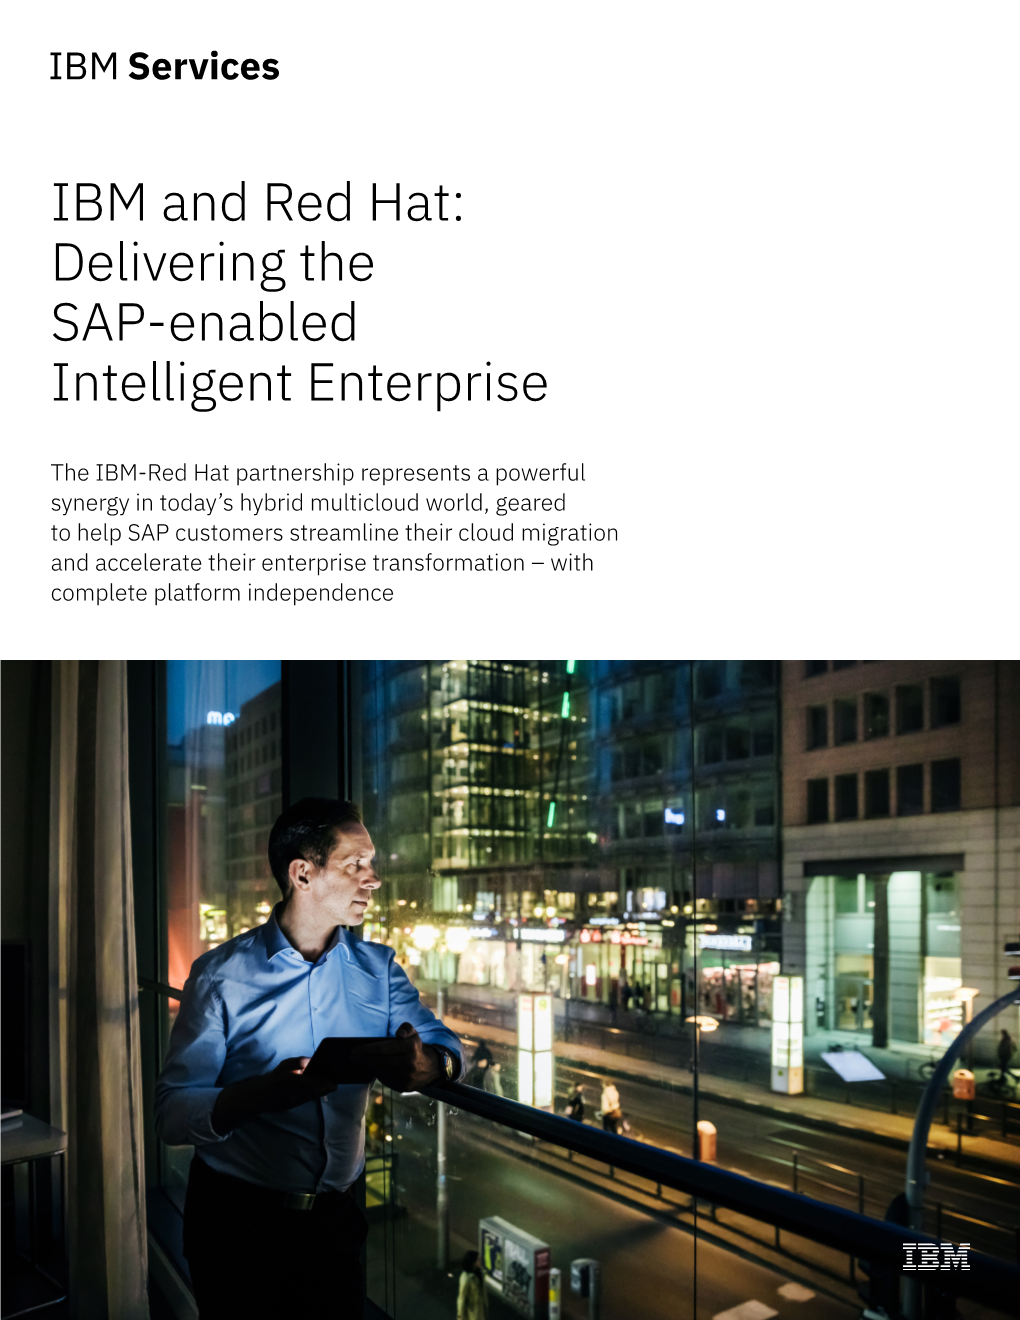 IBM and Red Hat: Delivering the SAP-Enabled Intelligent Enterprise